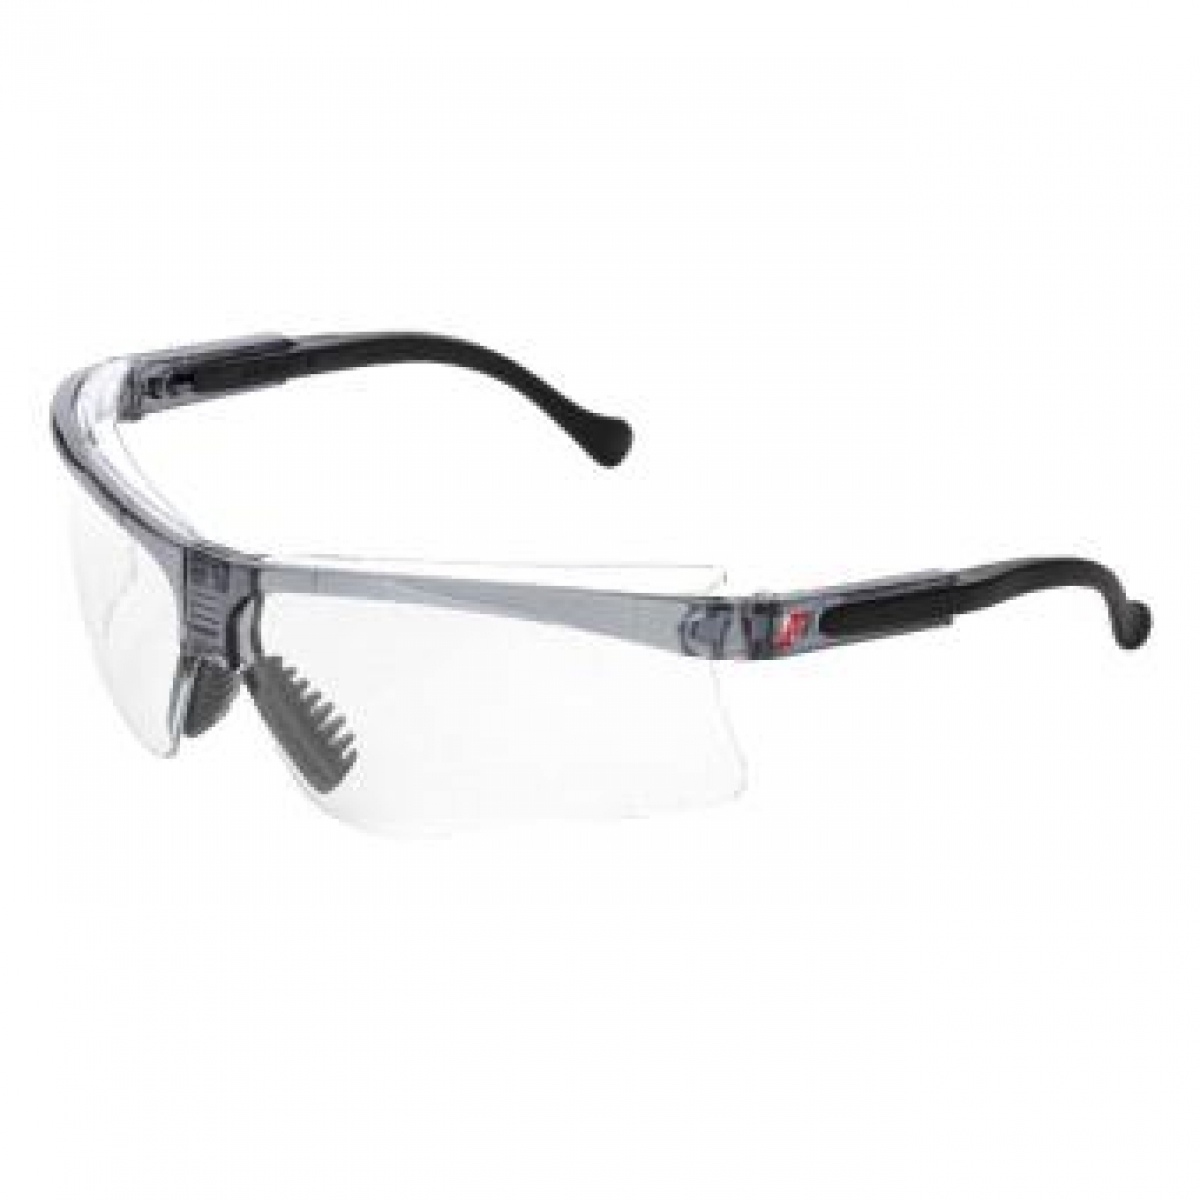 NITRAS VISION PROTECT PREMIUM, Schutzbrille, Tragkrper schwarz, Sichtscheiben klar, EN 166